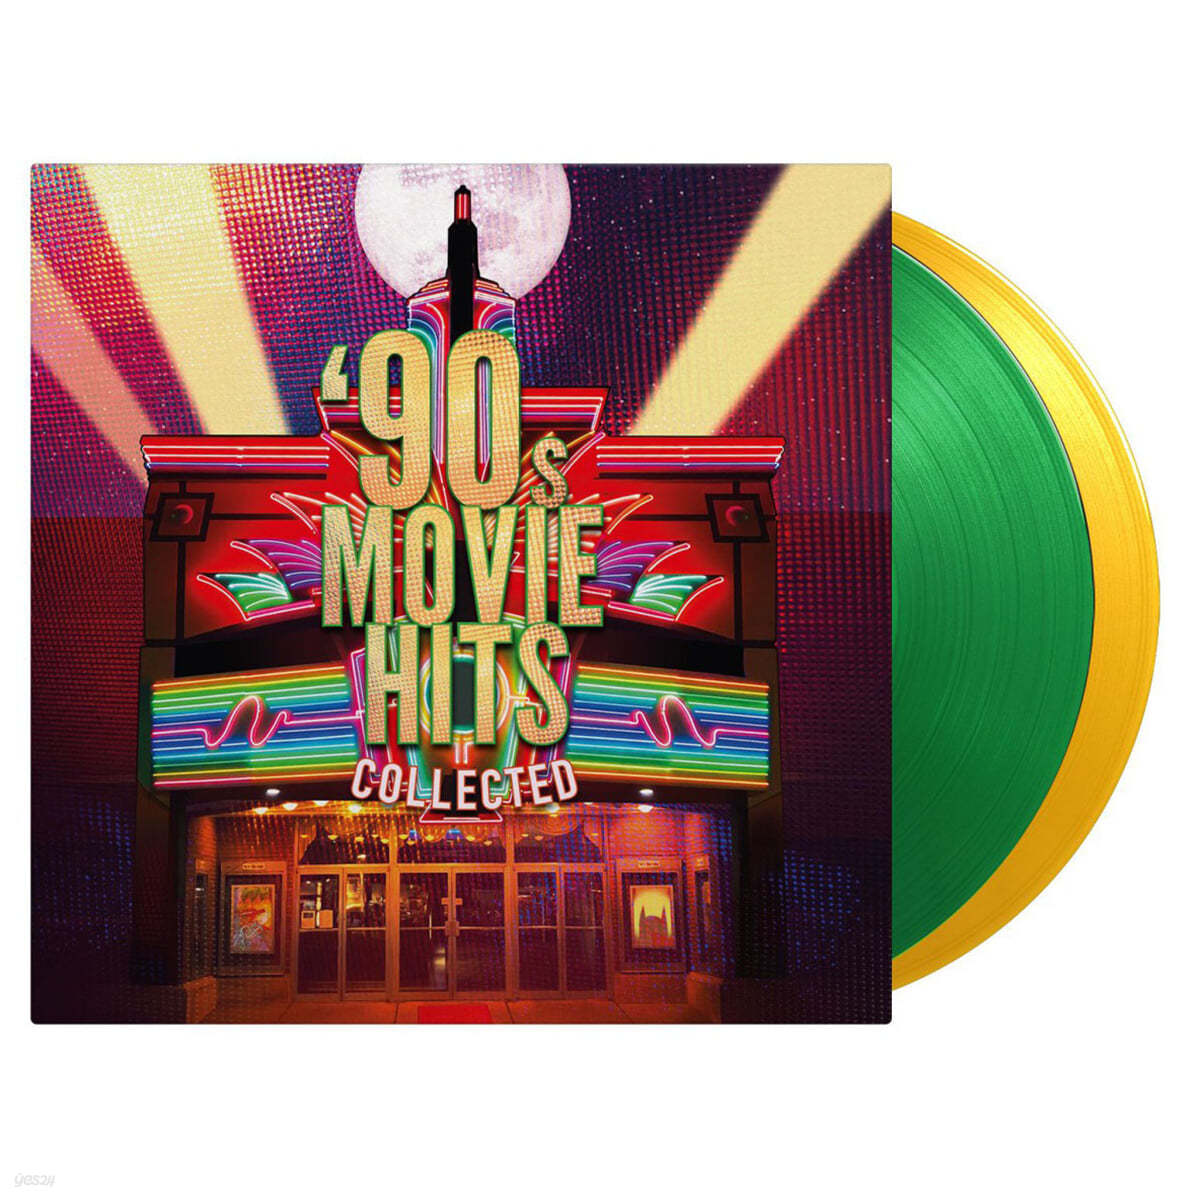 1990년대 영화음악 모음집 (90&#39;s Movie Hits Collected) [옐로우 &amp; 그린 컬러 2LP]